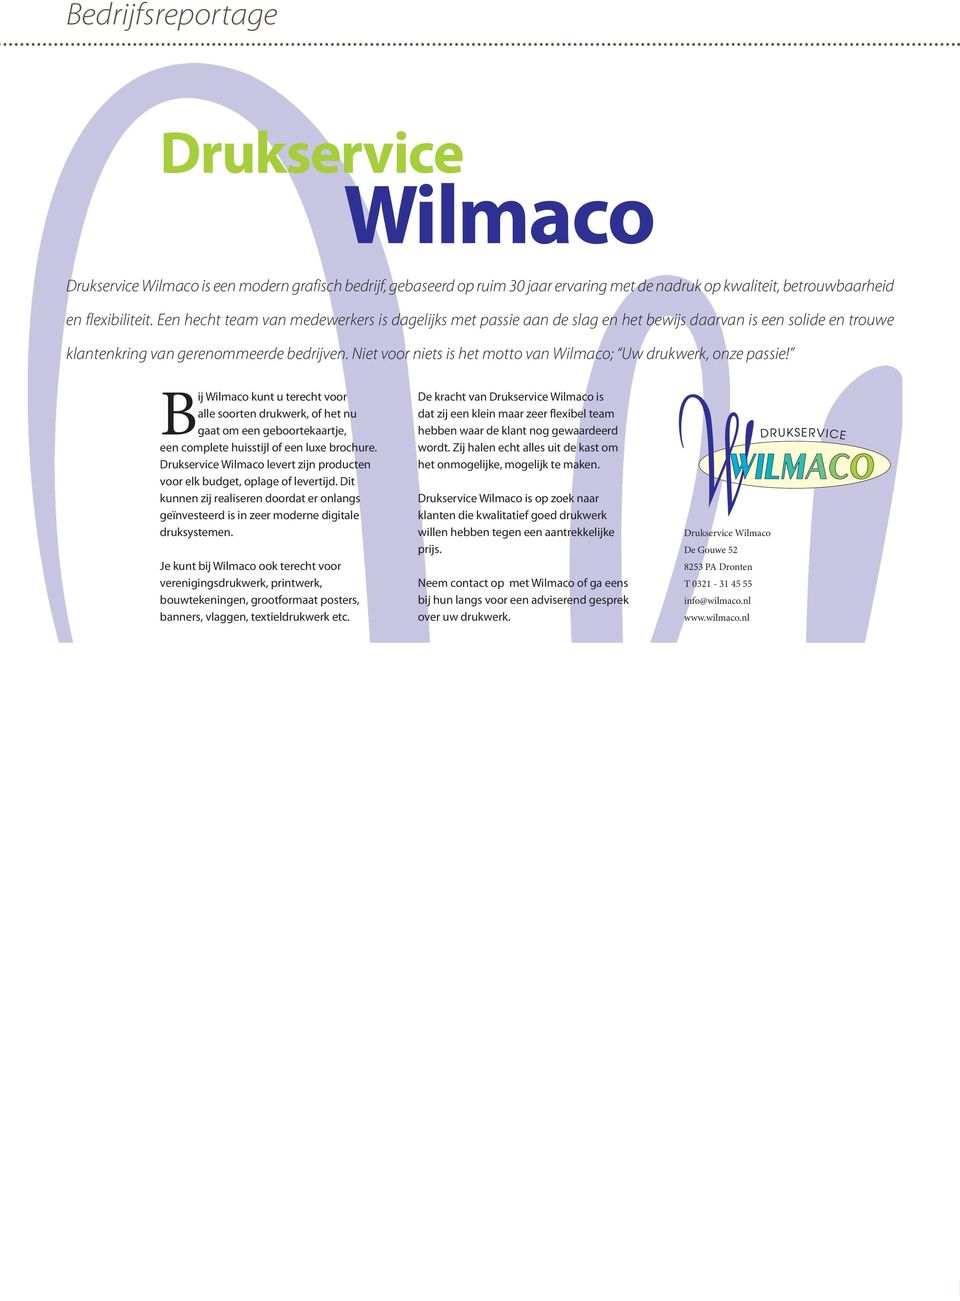 Niet voor niets is het motto van Wilmaco; Uw drukwerk, onze passie!